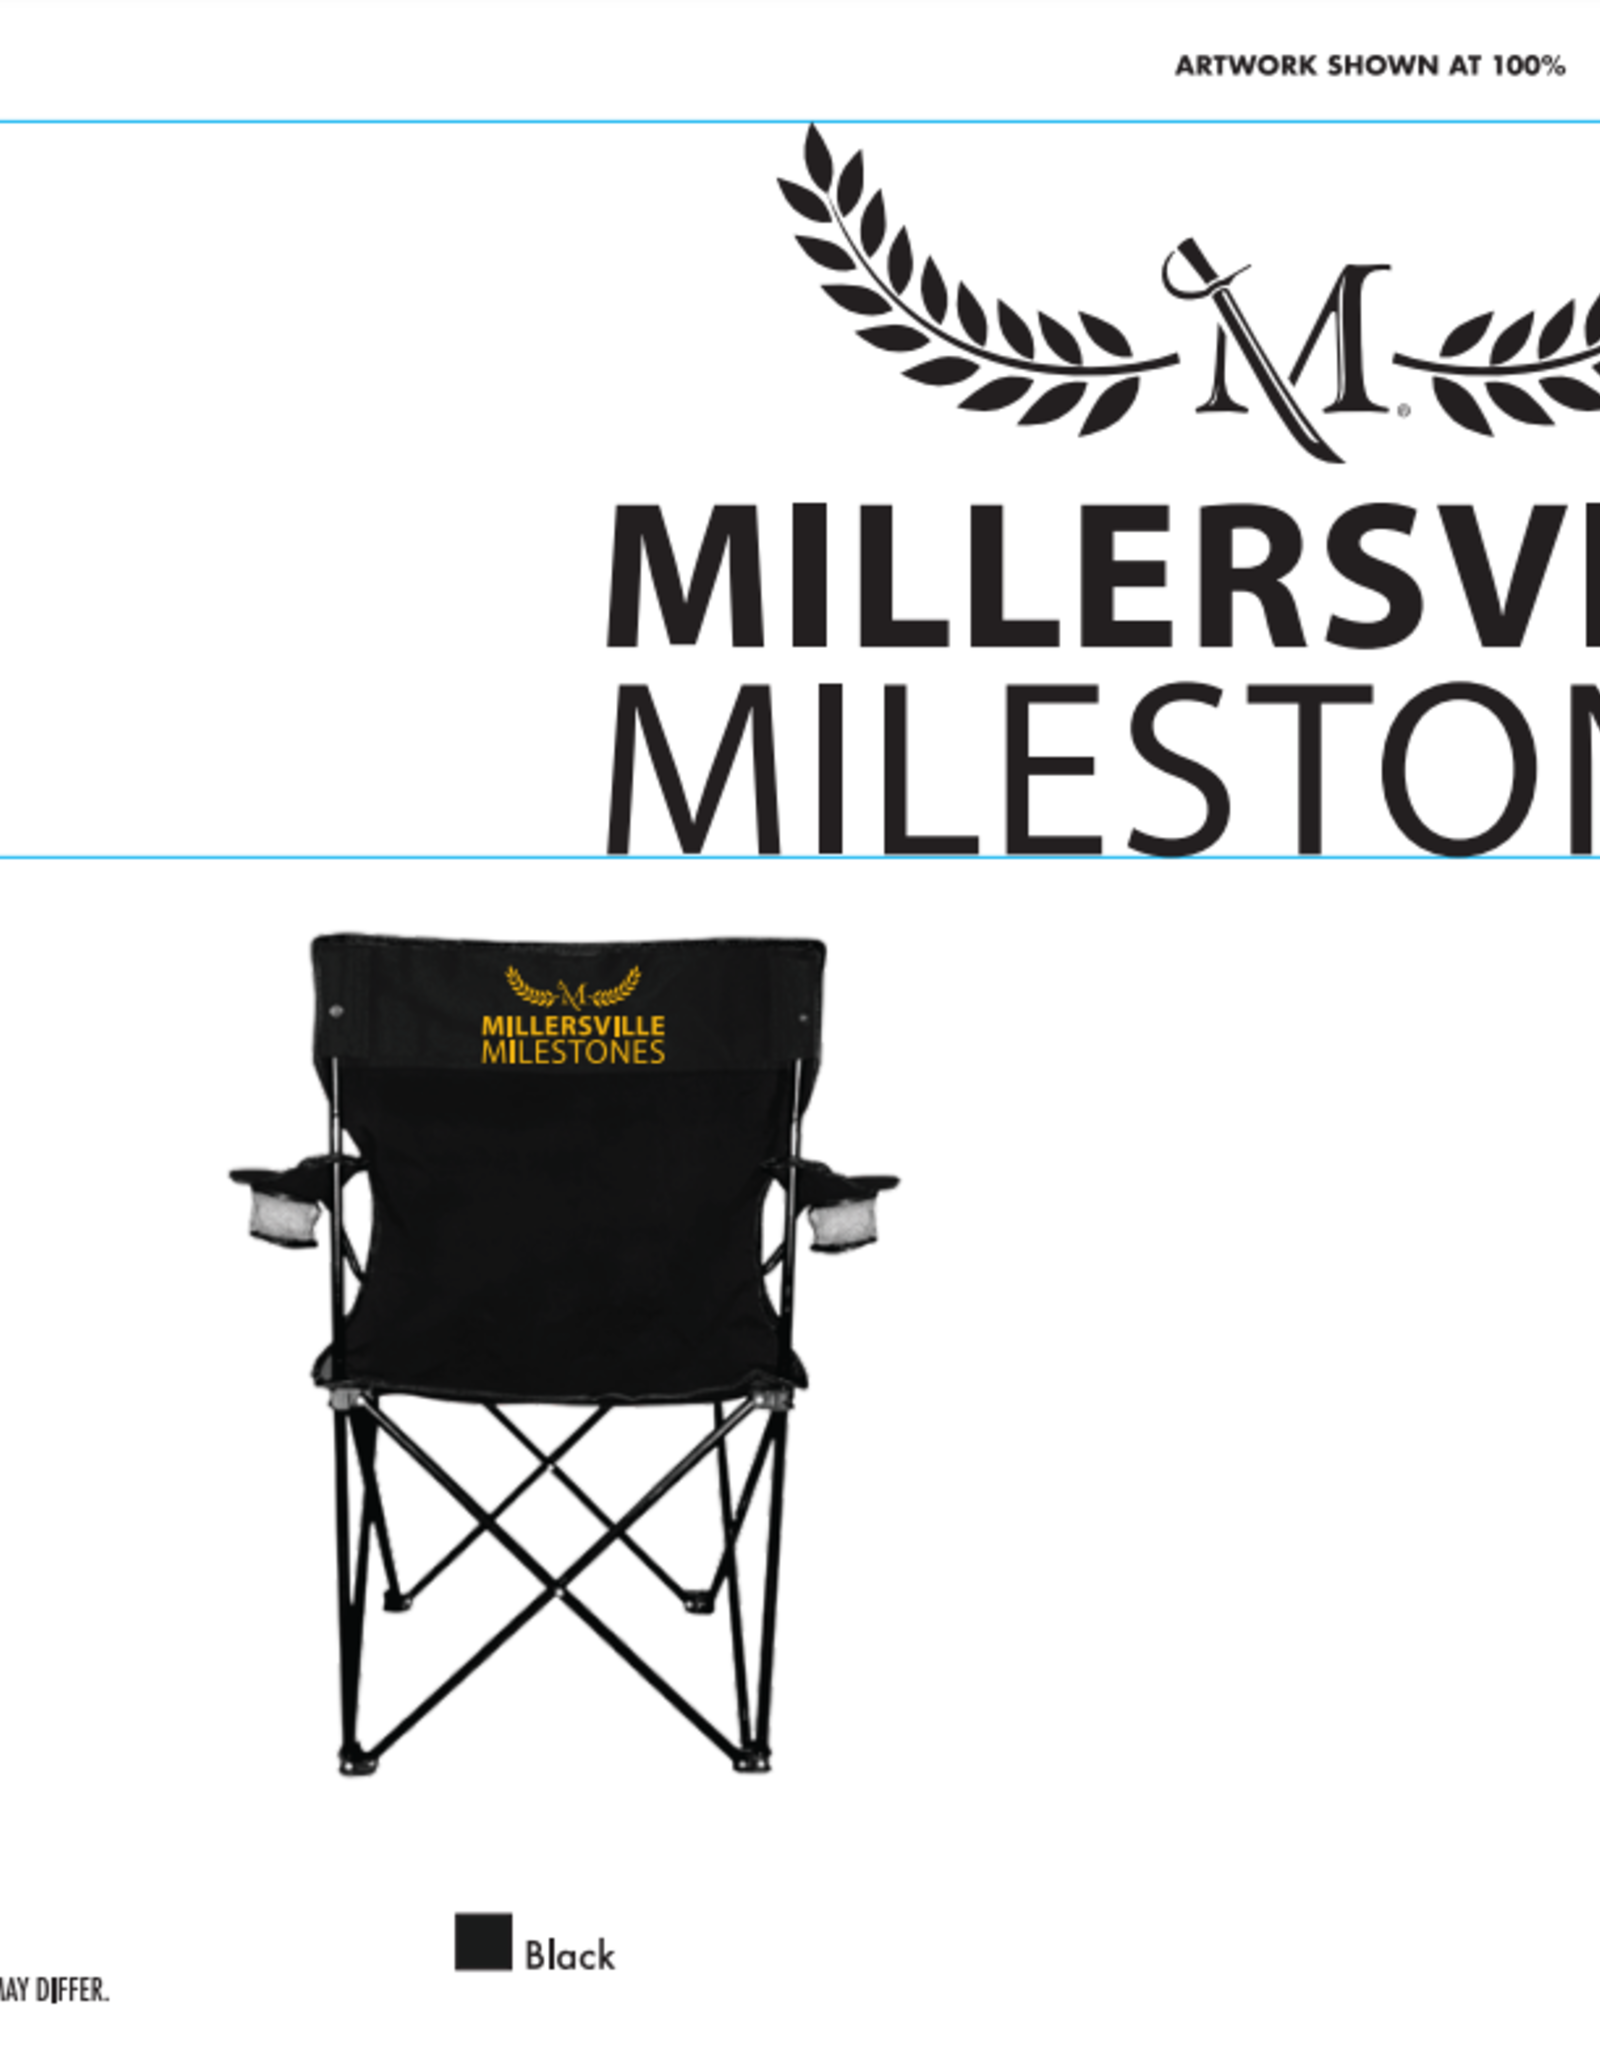 Millersville Milestones Lawn Chair